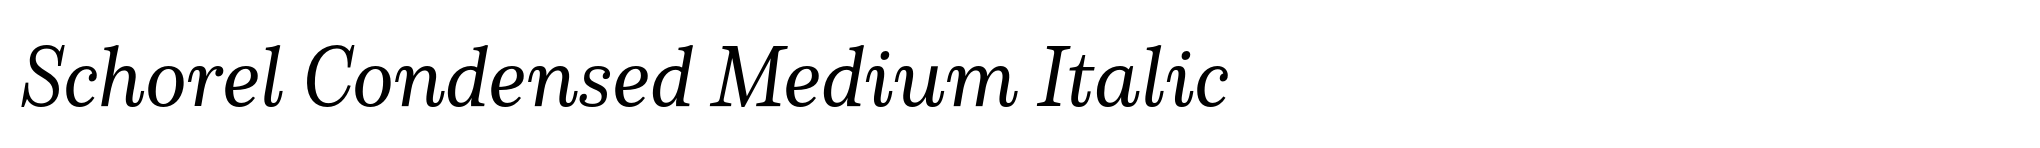 Schorel Condensed Medium Italic image